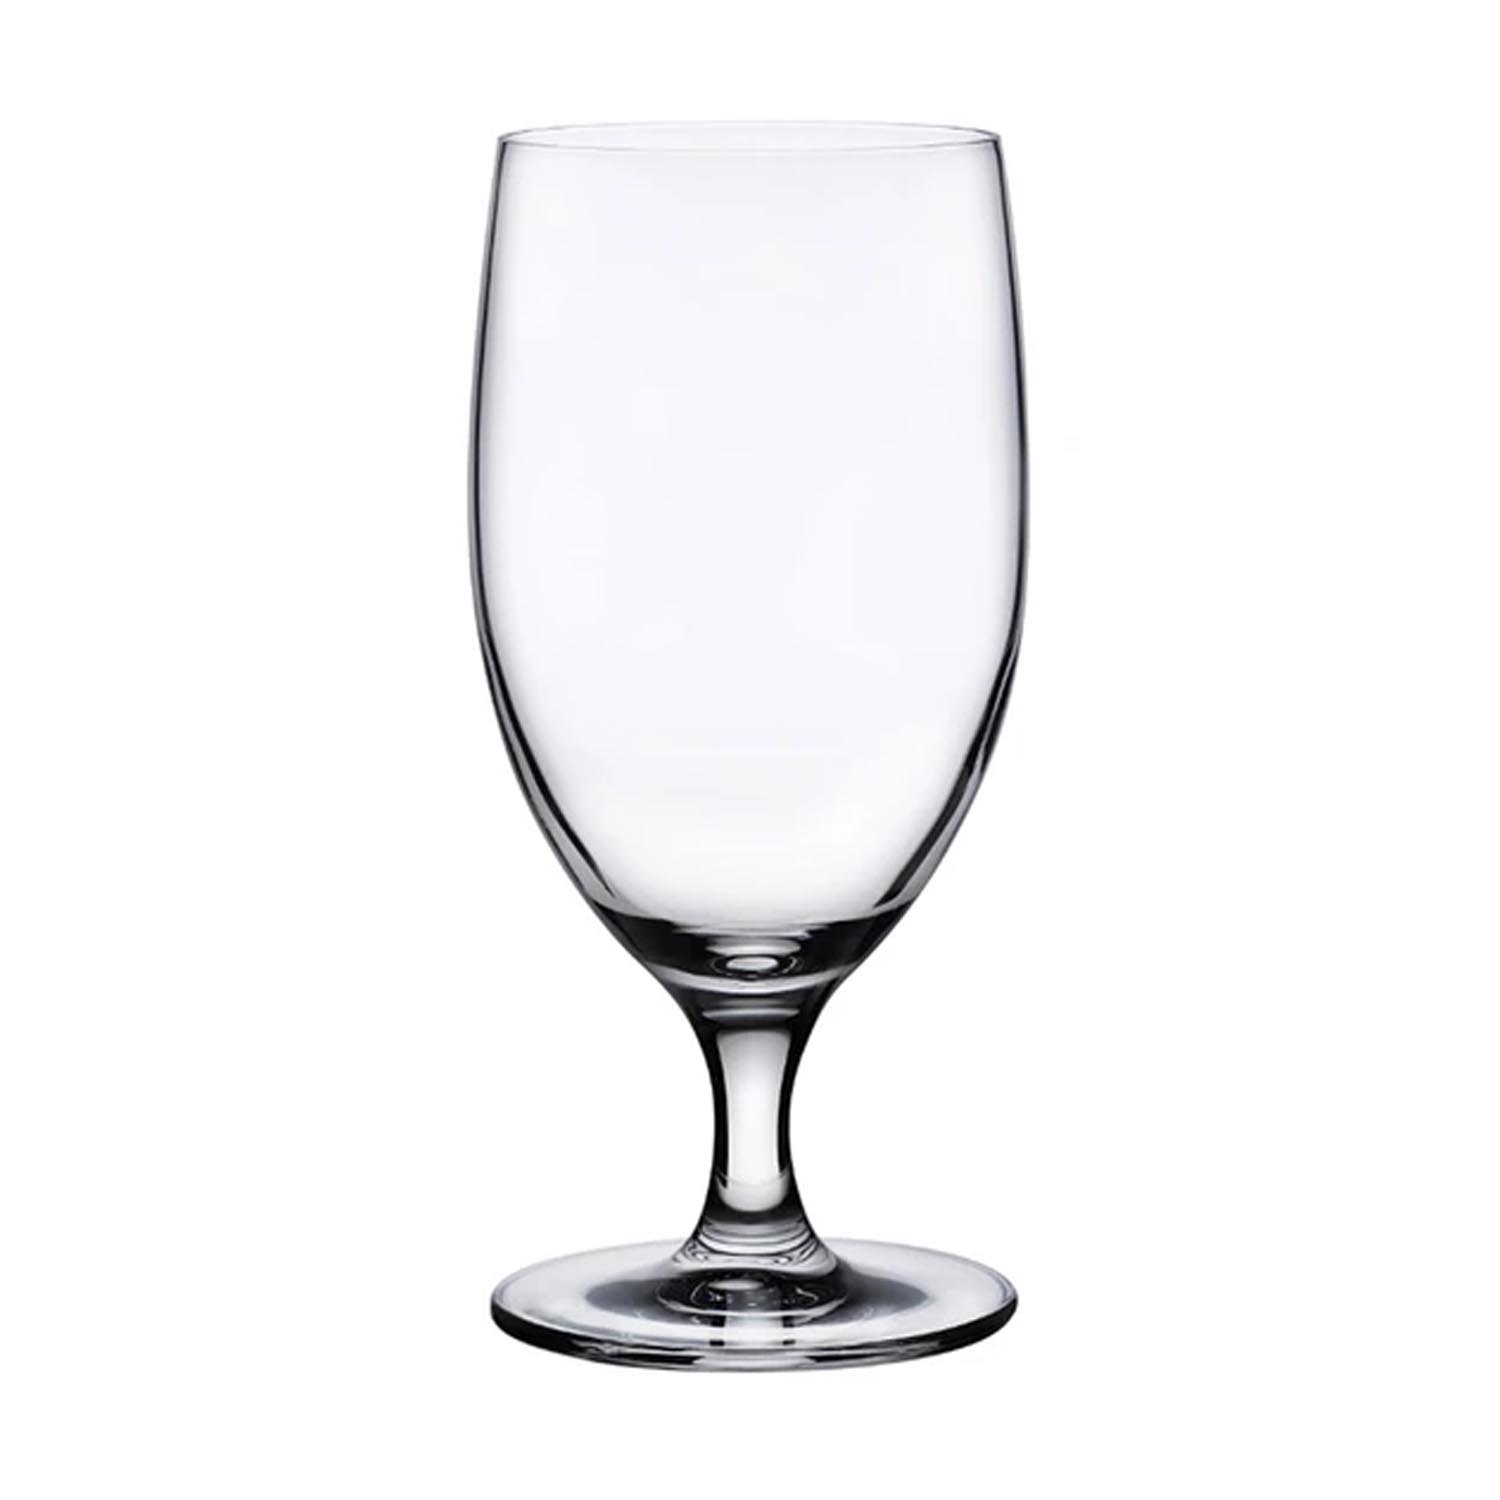 Range-verre 3 rangées - Mur - Range-verres - Wineandbarrels A/S